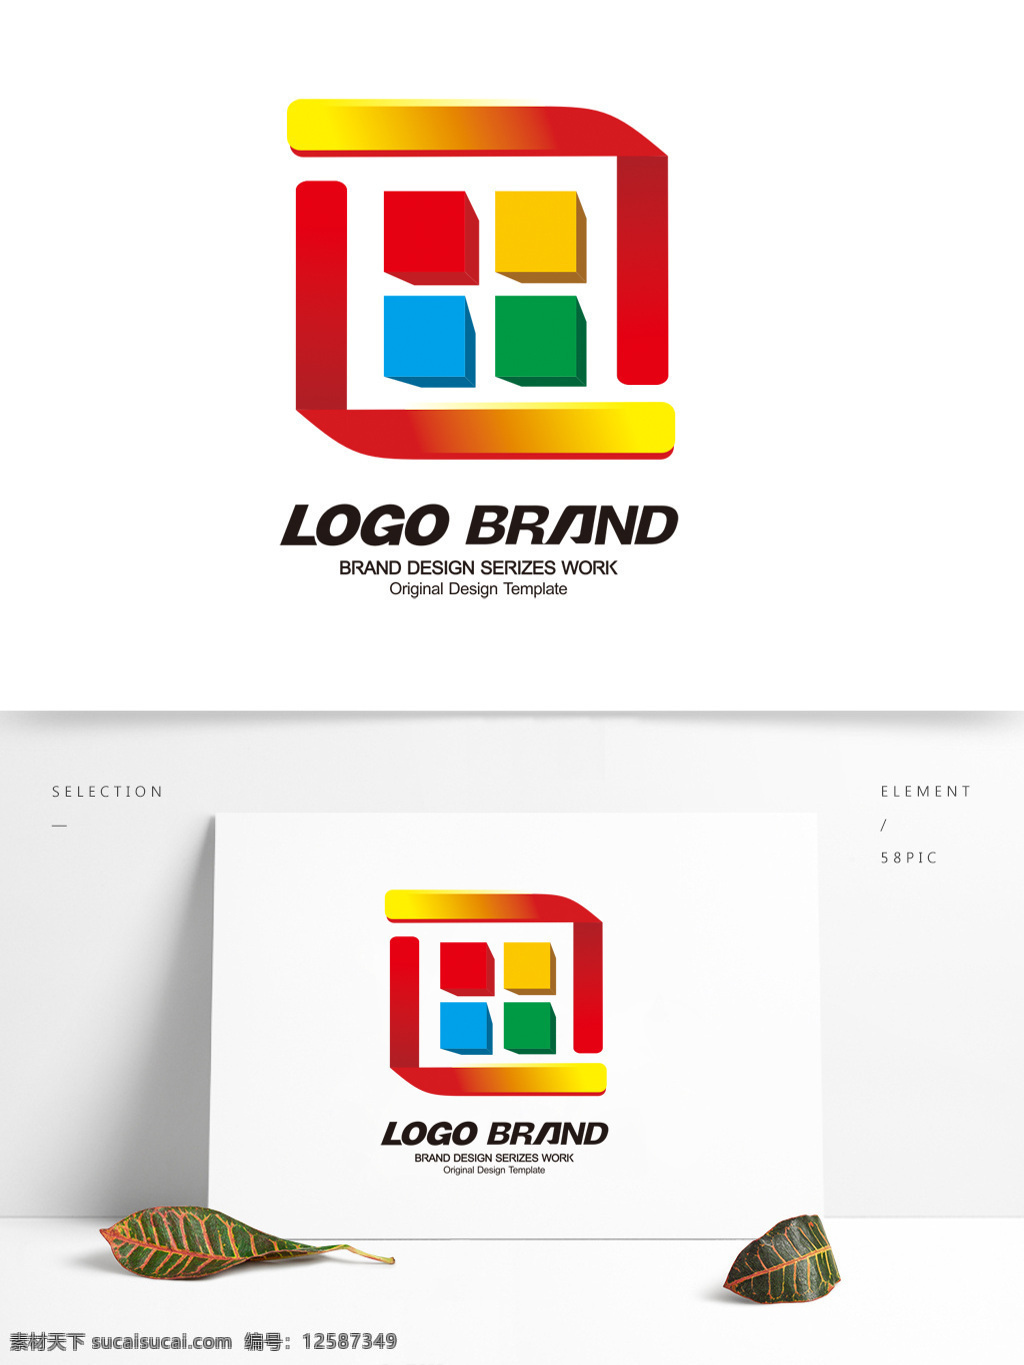 创意 矢量 多彩 画室 标志 设计公司 logo l 字母 标志设计 组合 艺术 工作室 公司 公司标志设计 企业 会徽标志设计 企业标志设计